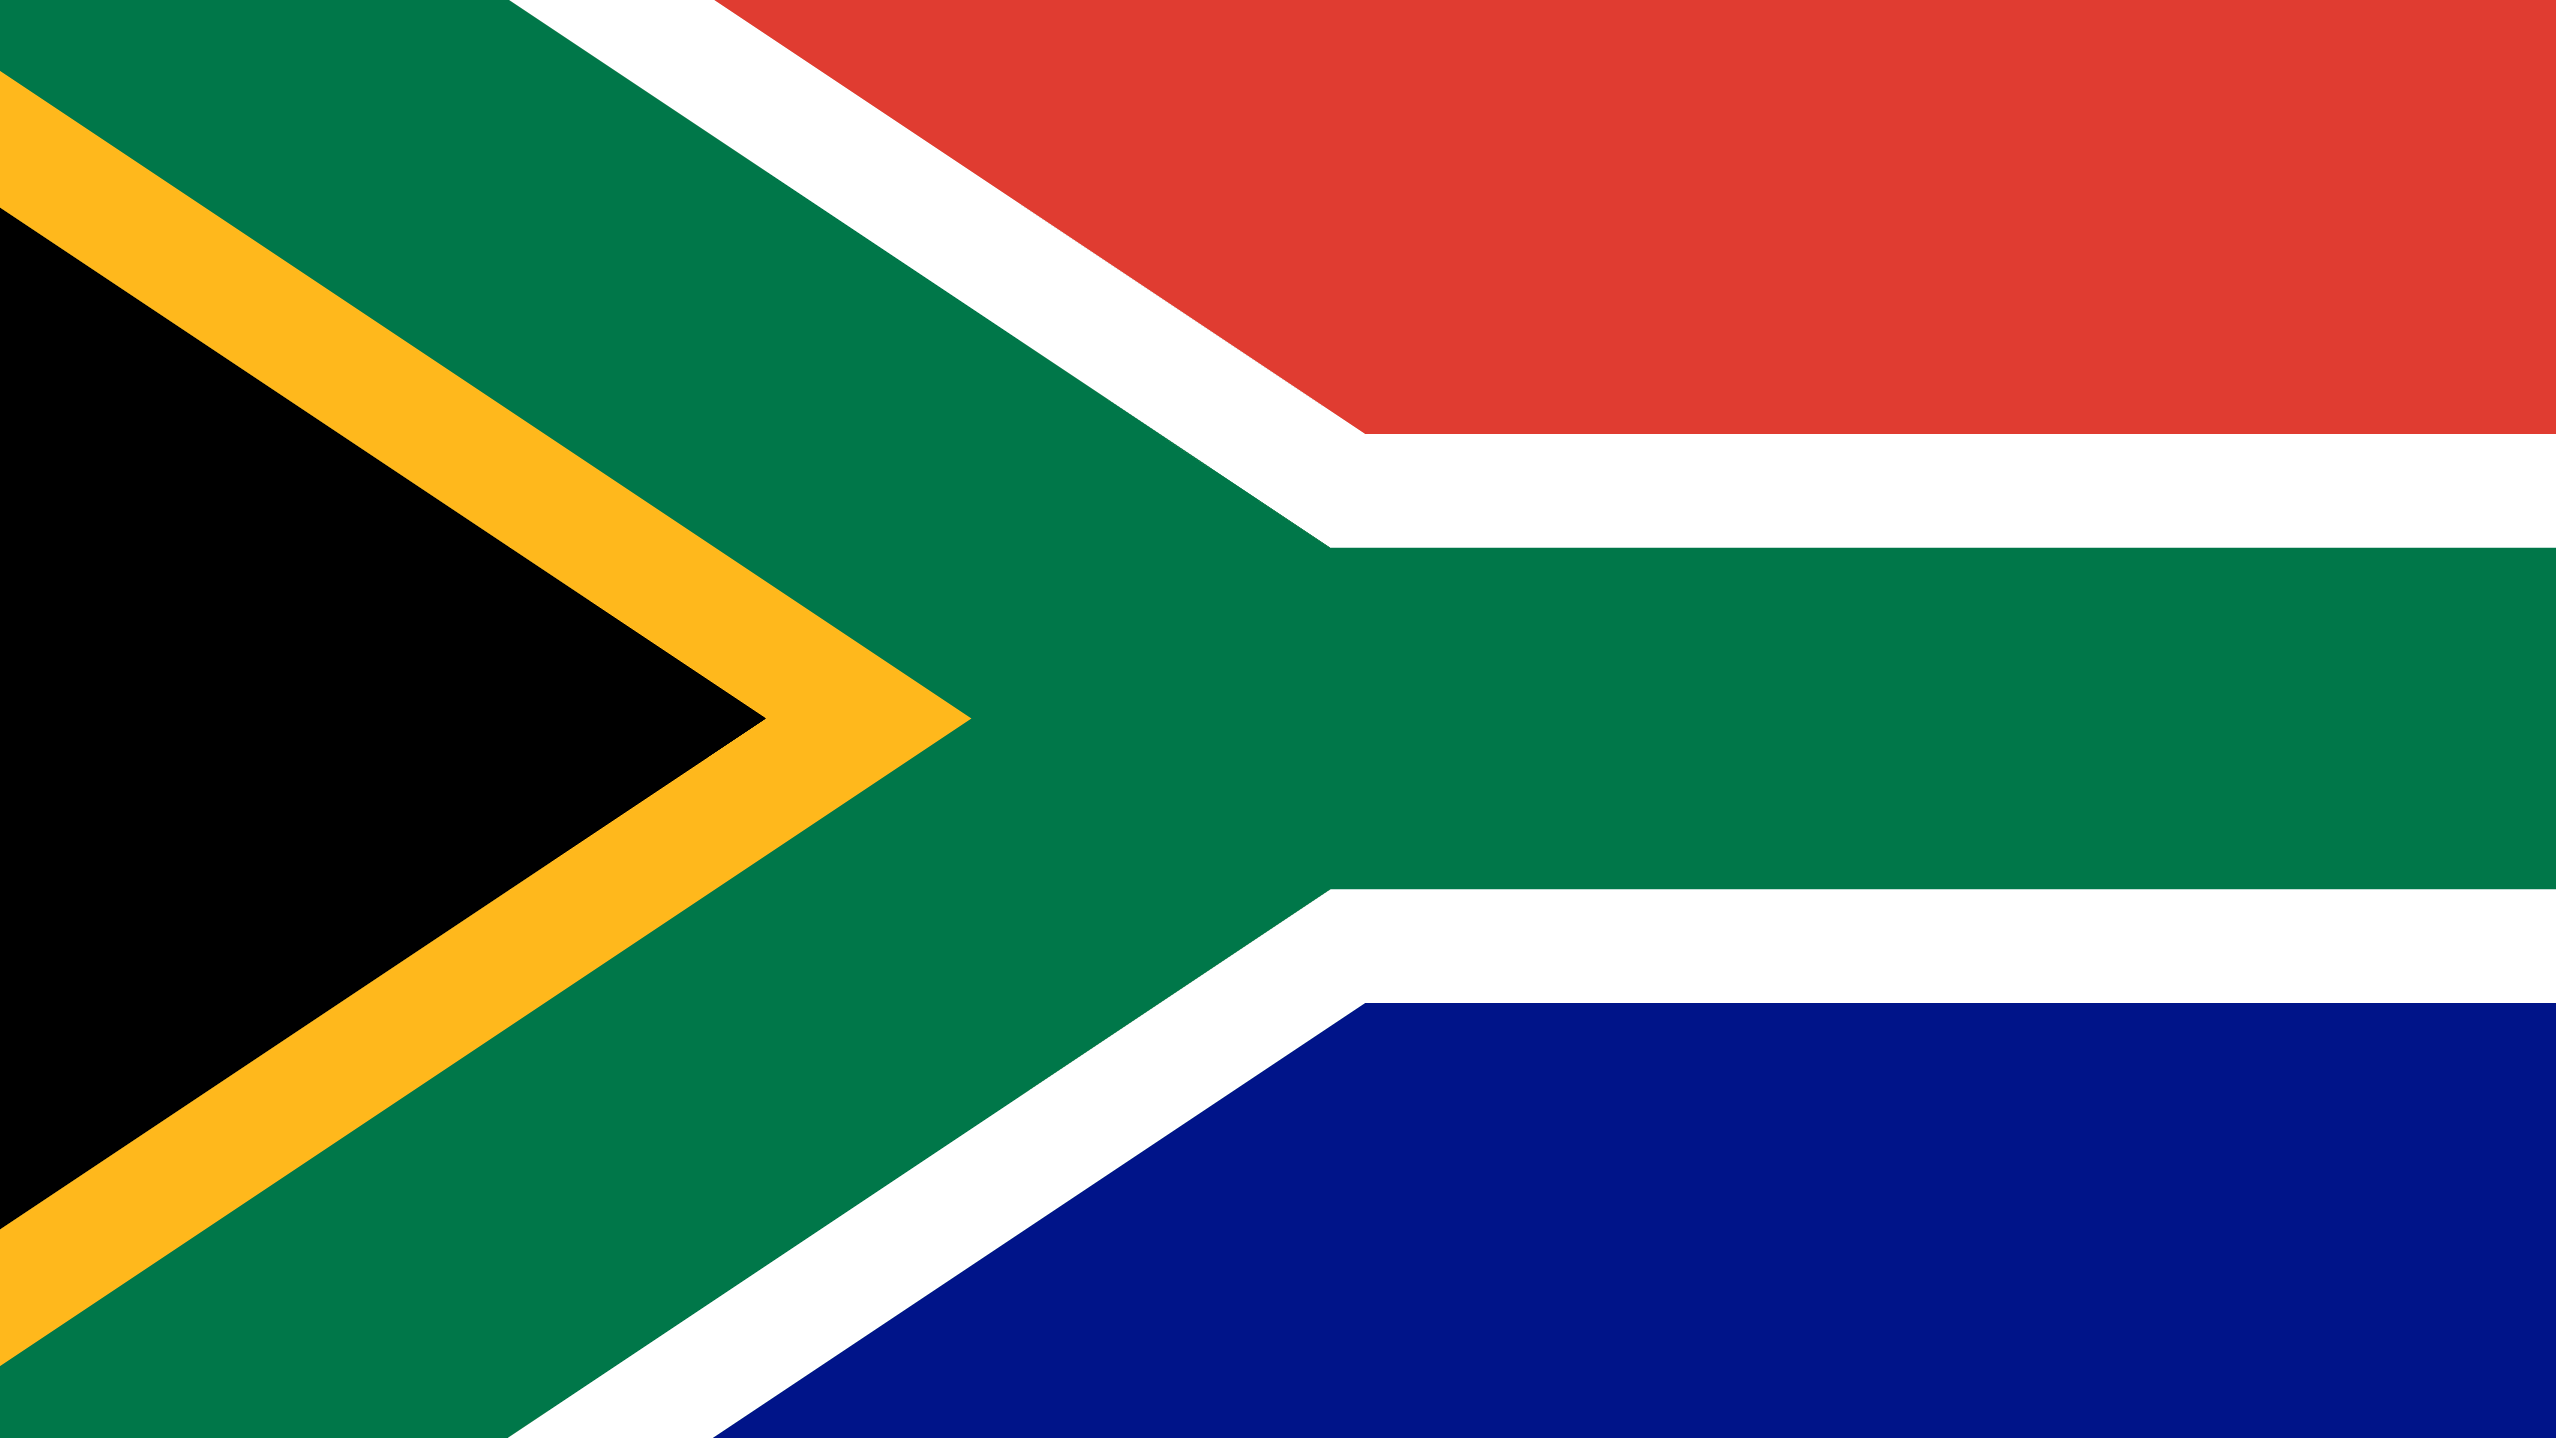 Südafrikanische Flagge